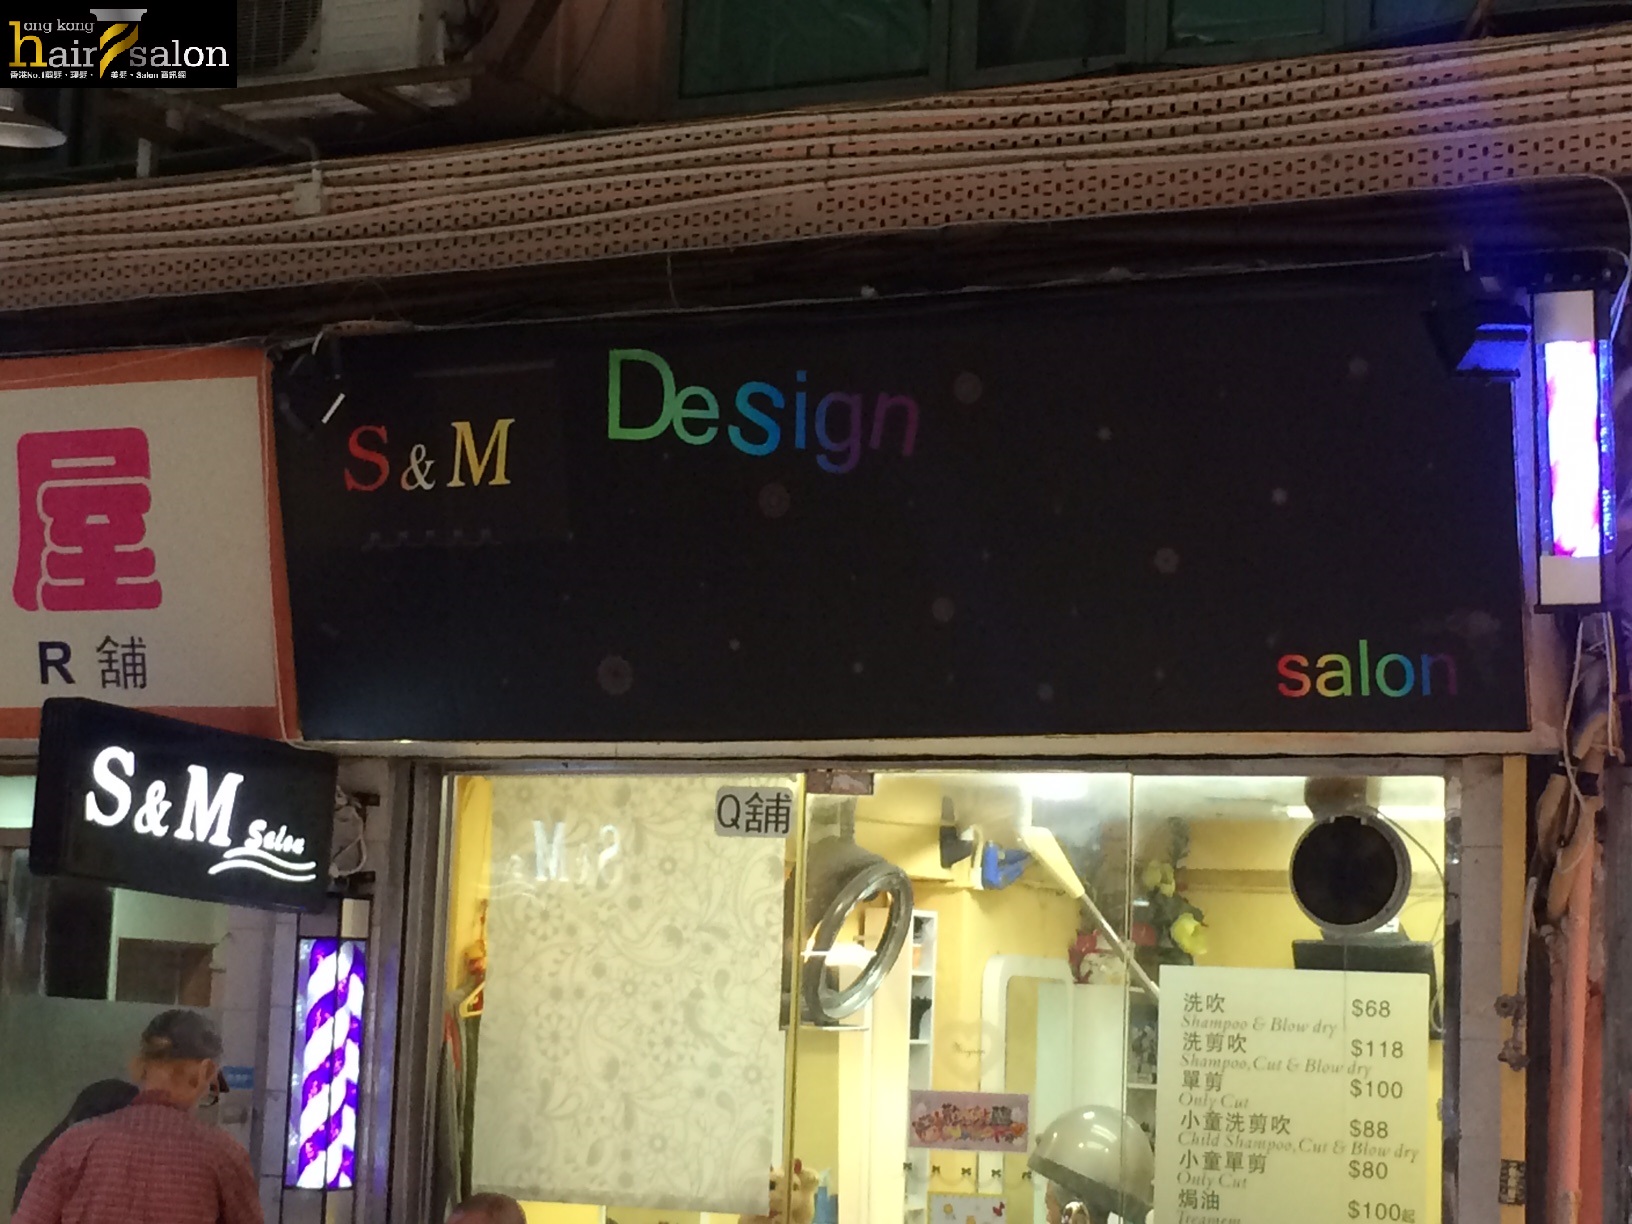 髮型屋: S&M Design Salon